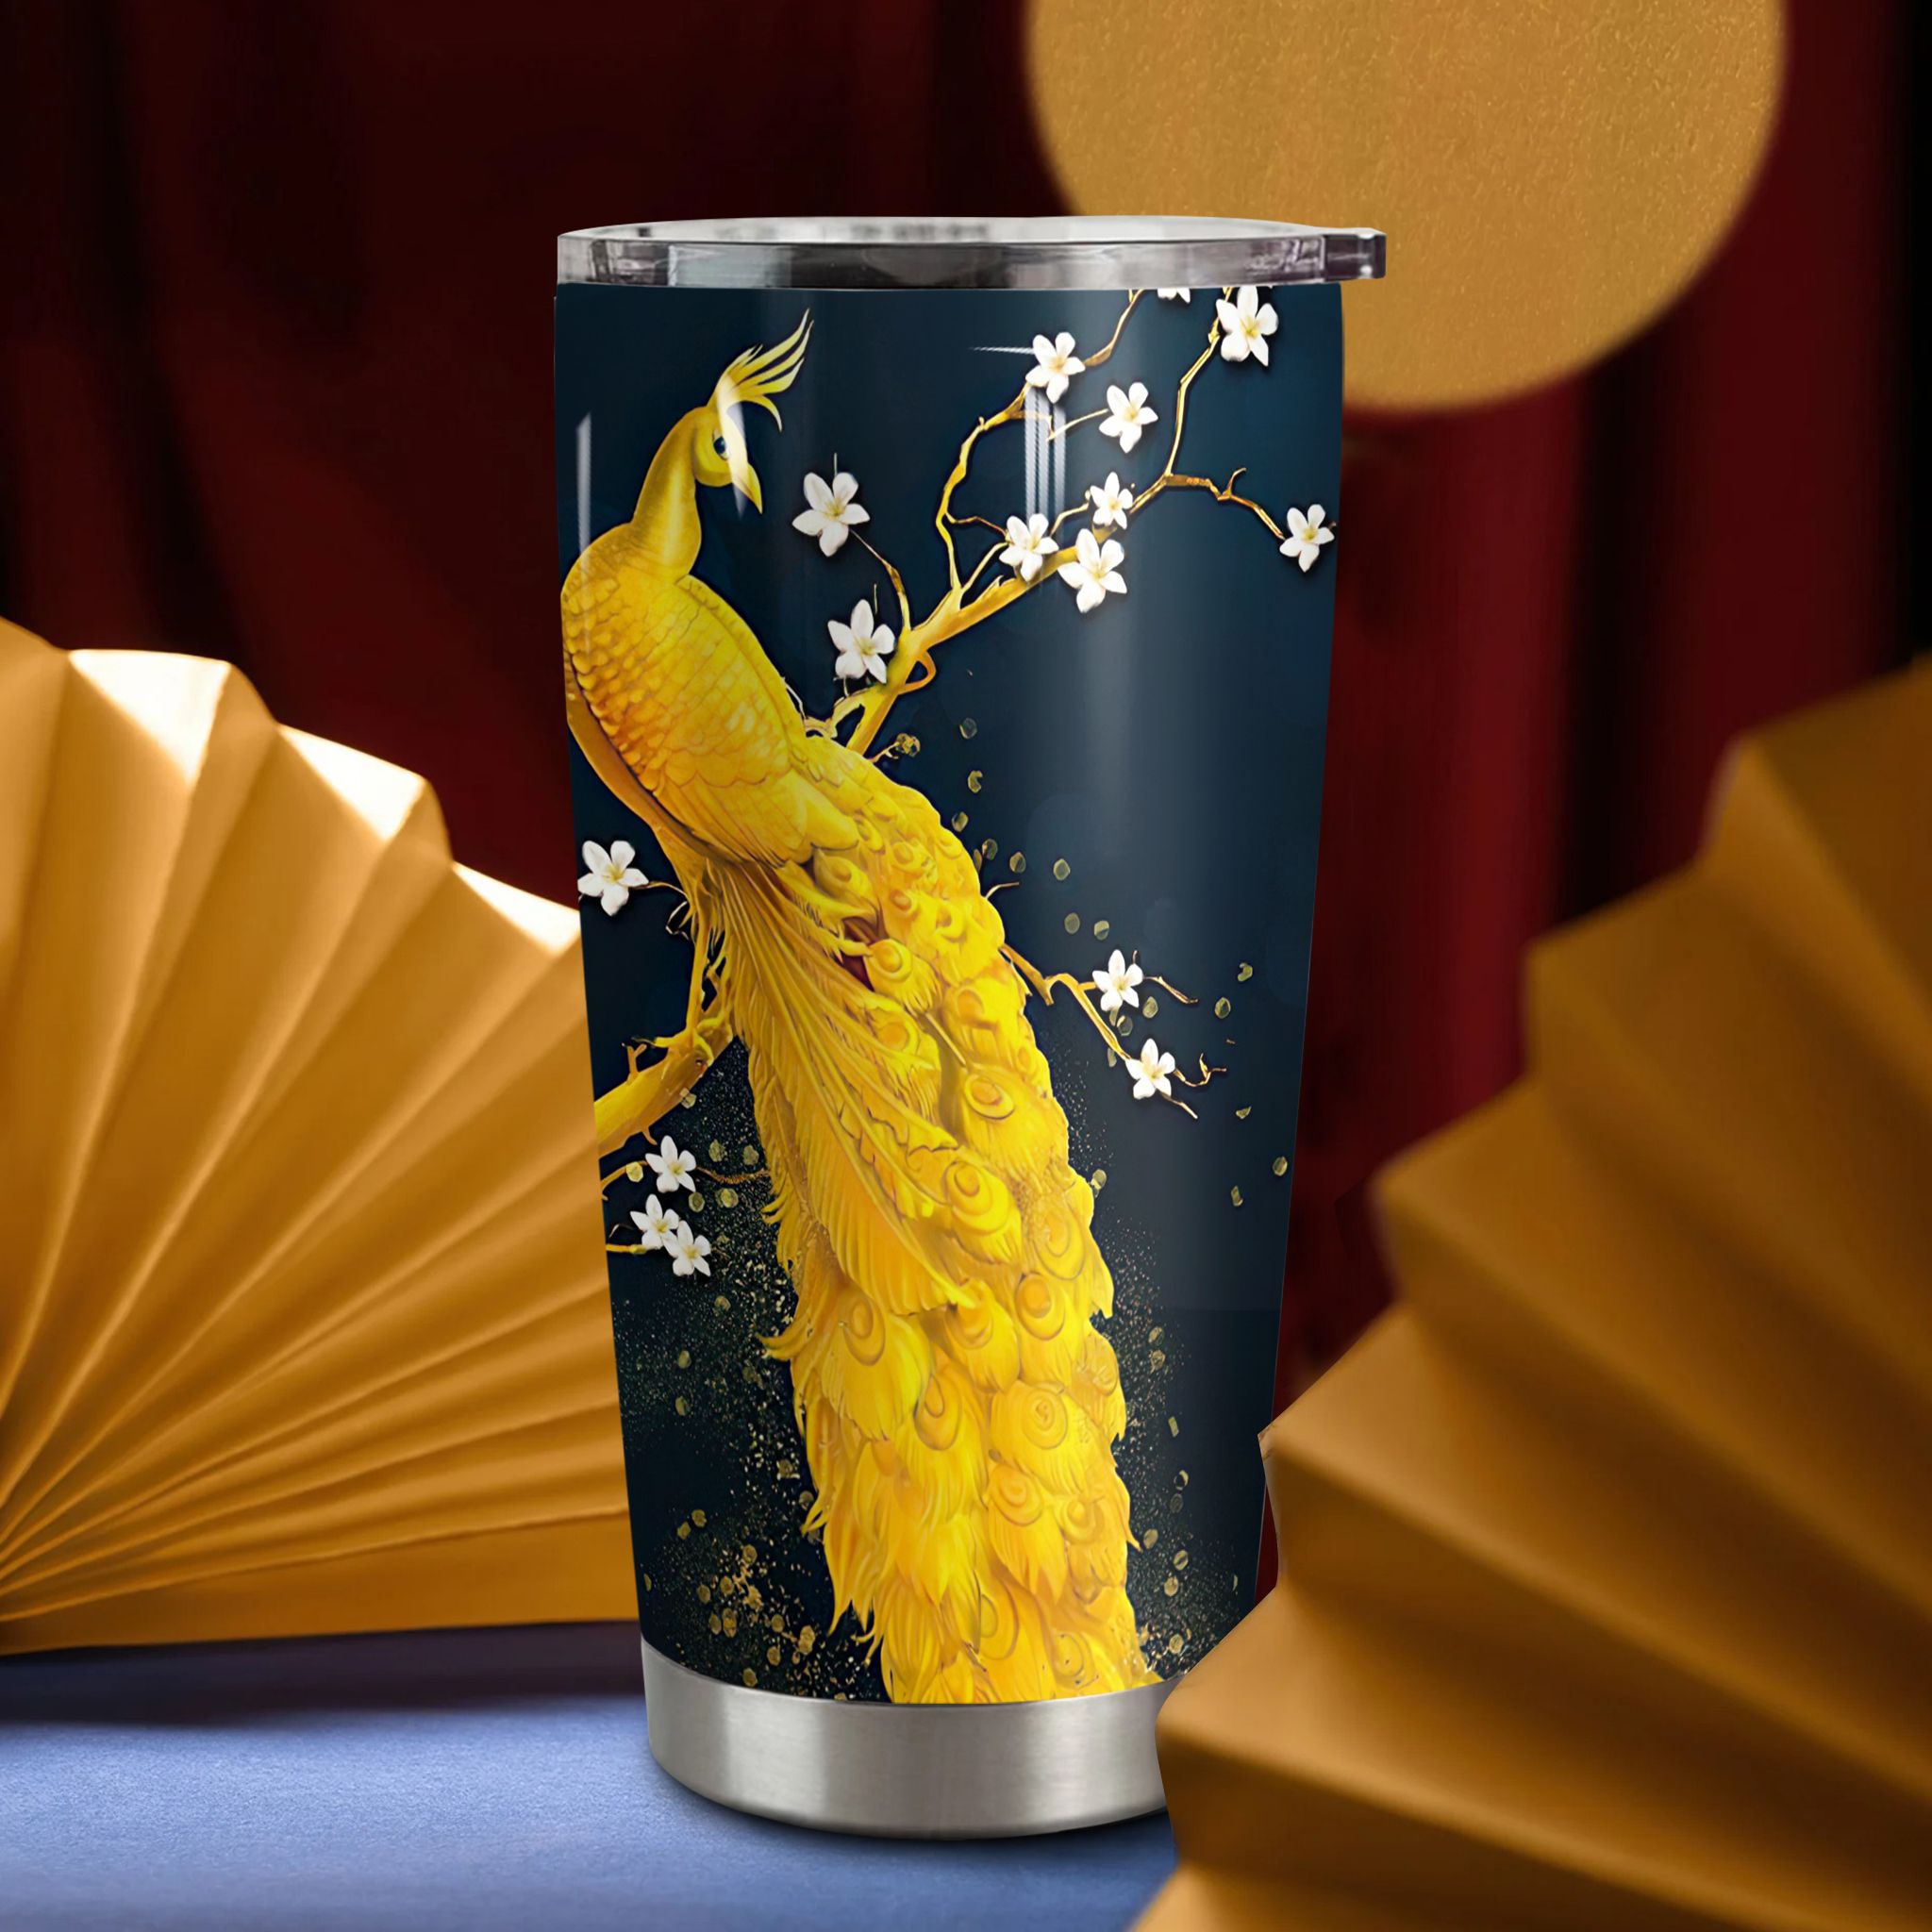  Chim công vương giả Go Drink Phong thủy - Tài lộc Cốc Giữ Nhiệt 600ml In tên, hình ảnh theo yêu cầu 